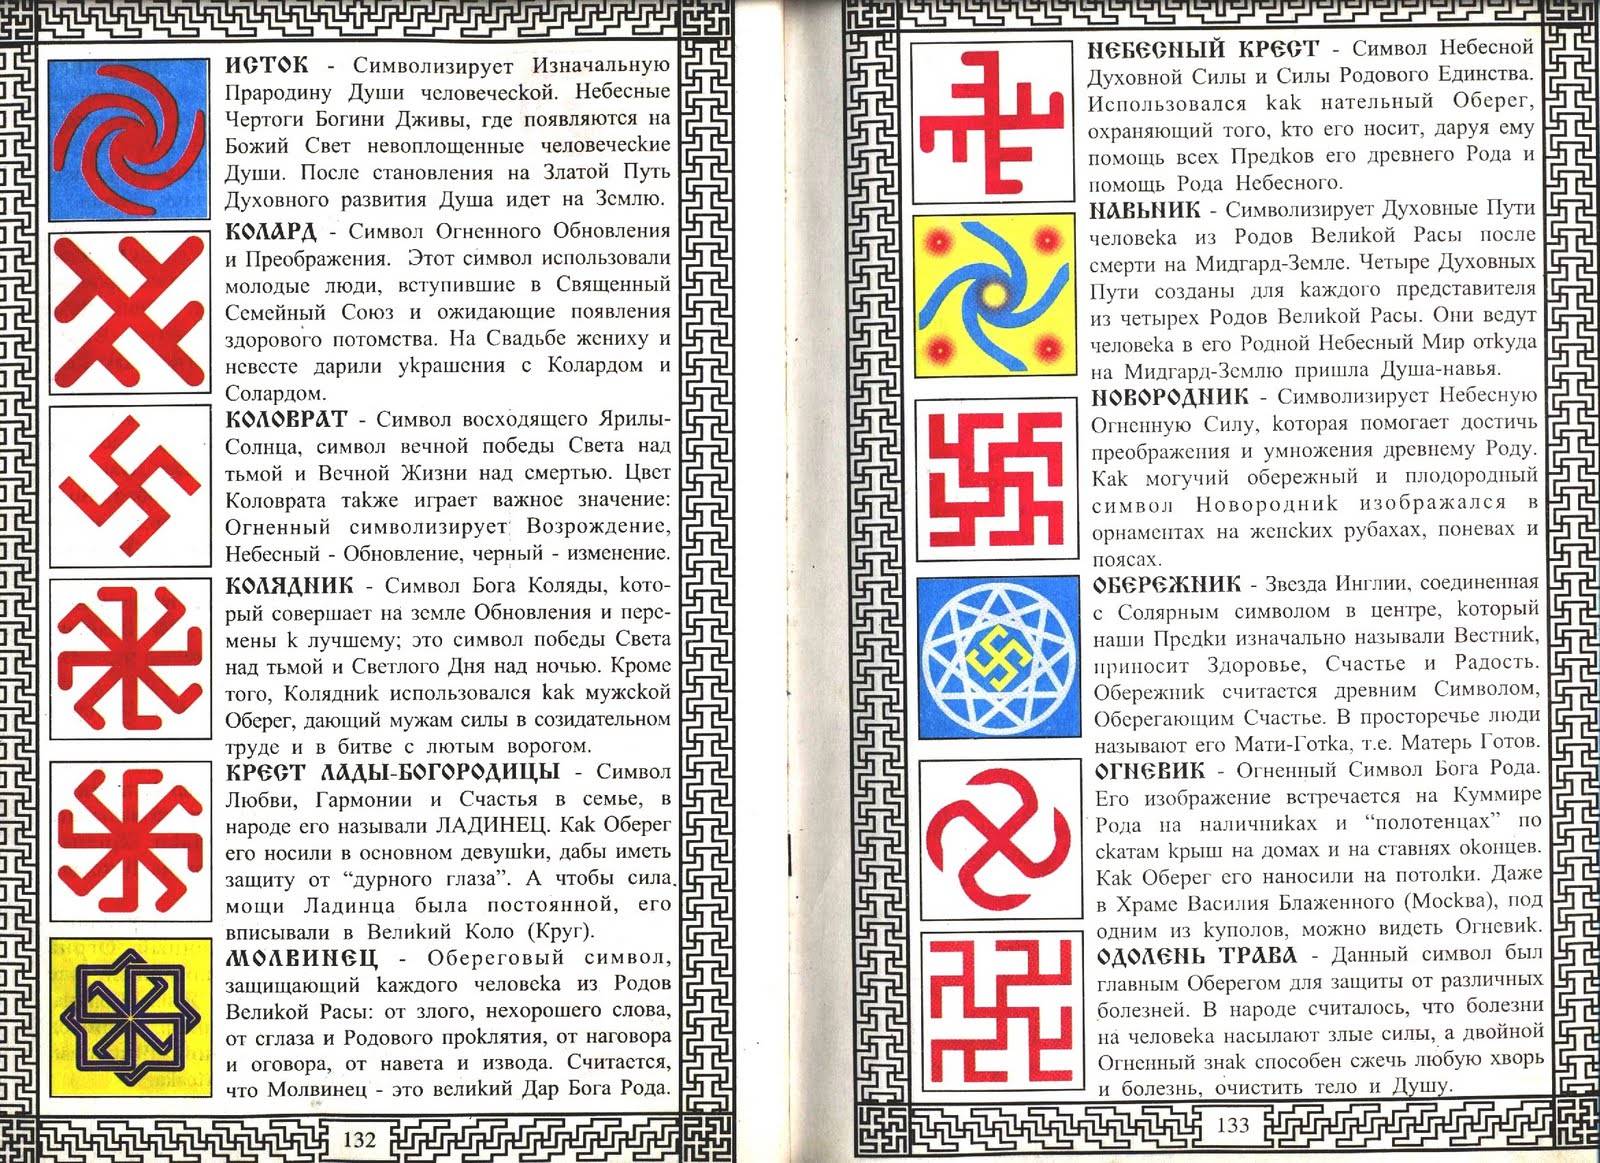 Ведические символы славян и их значение